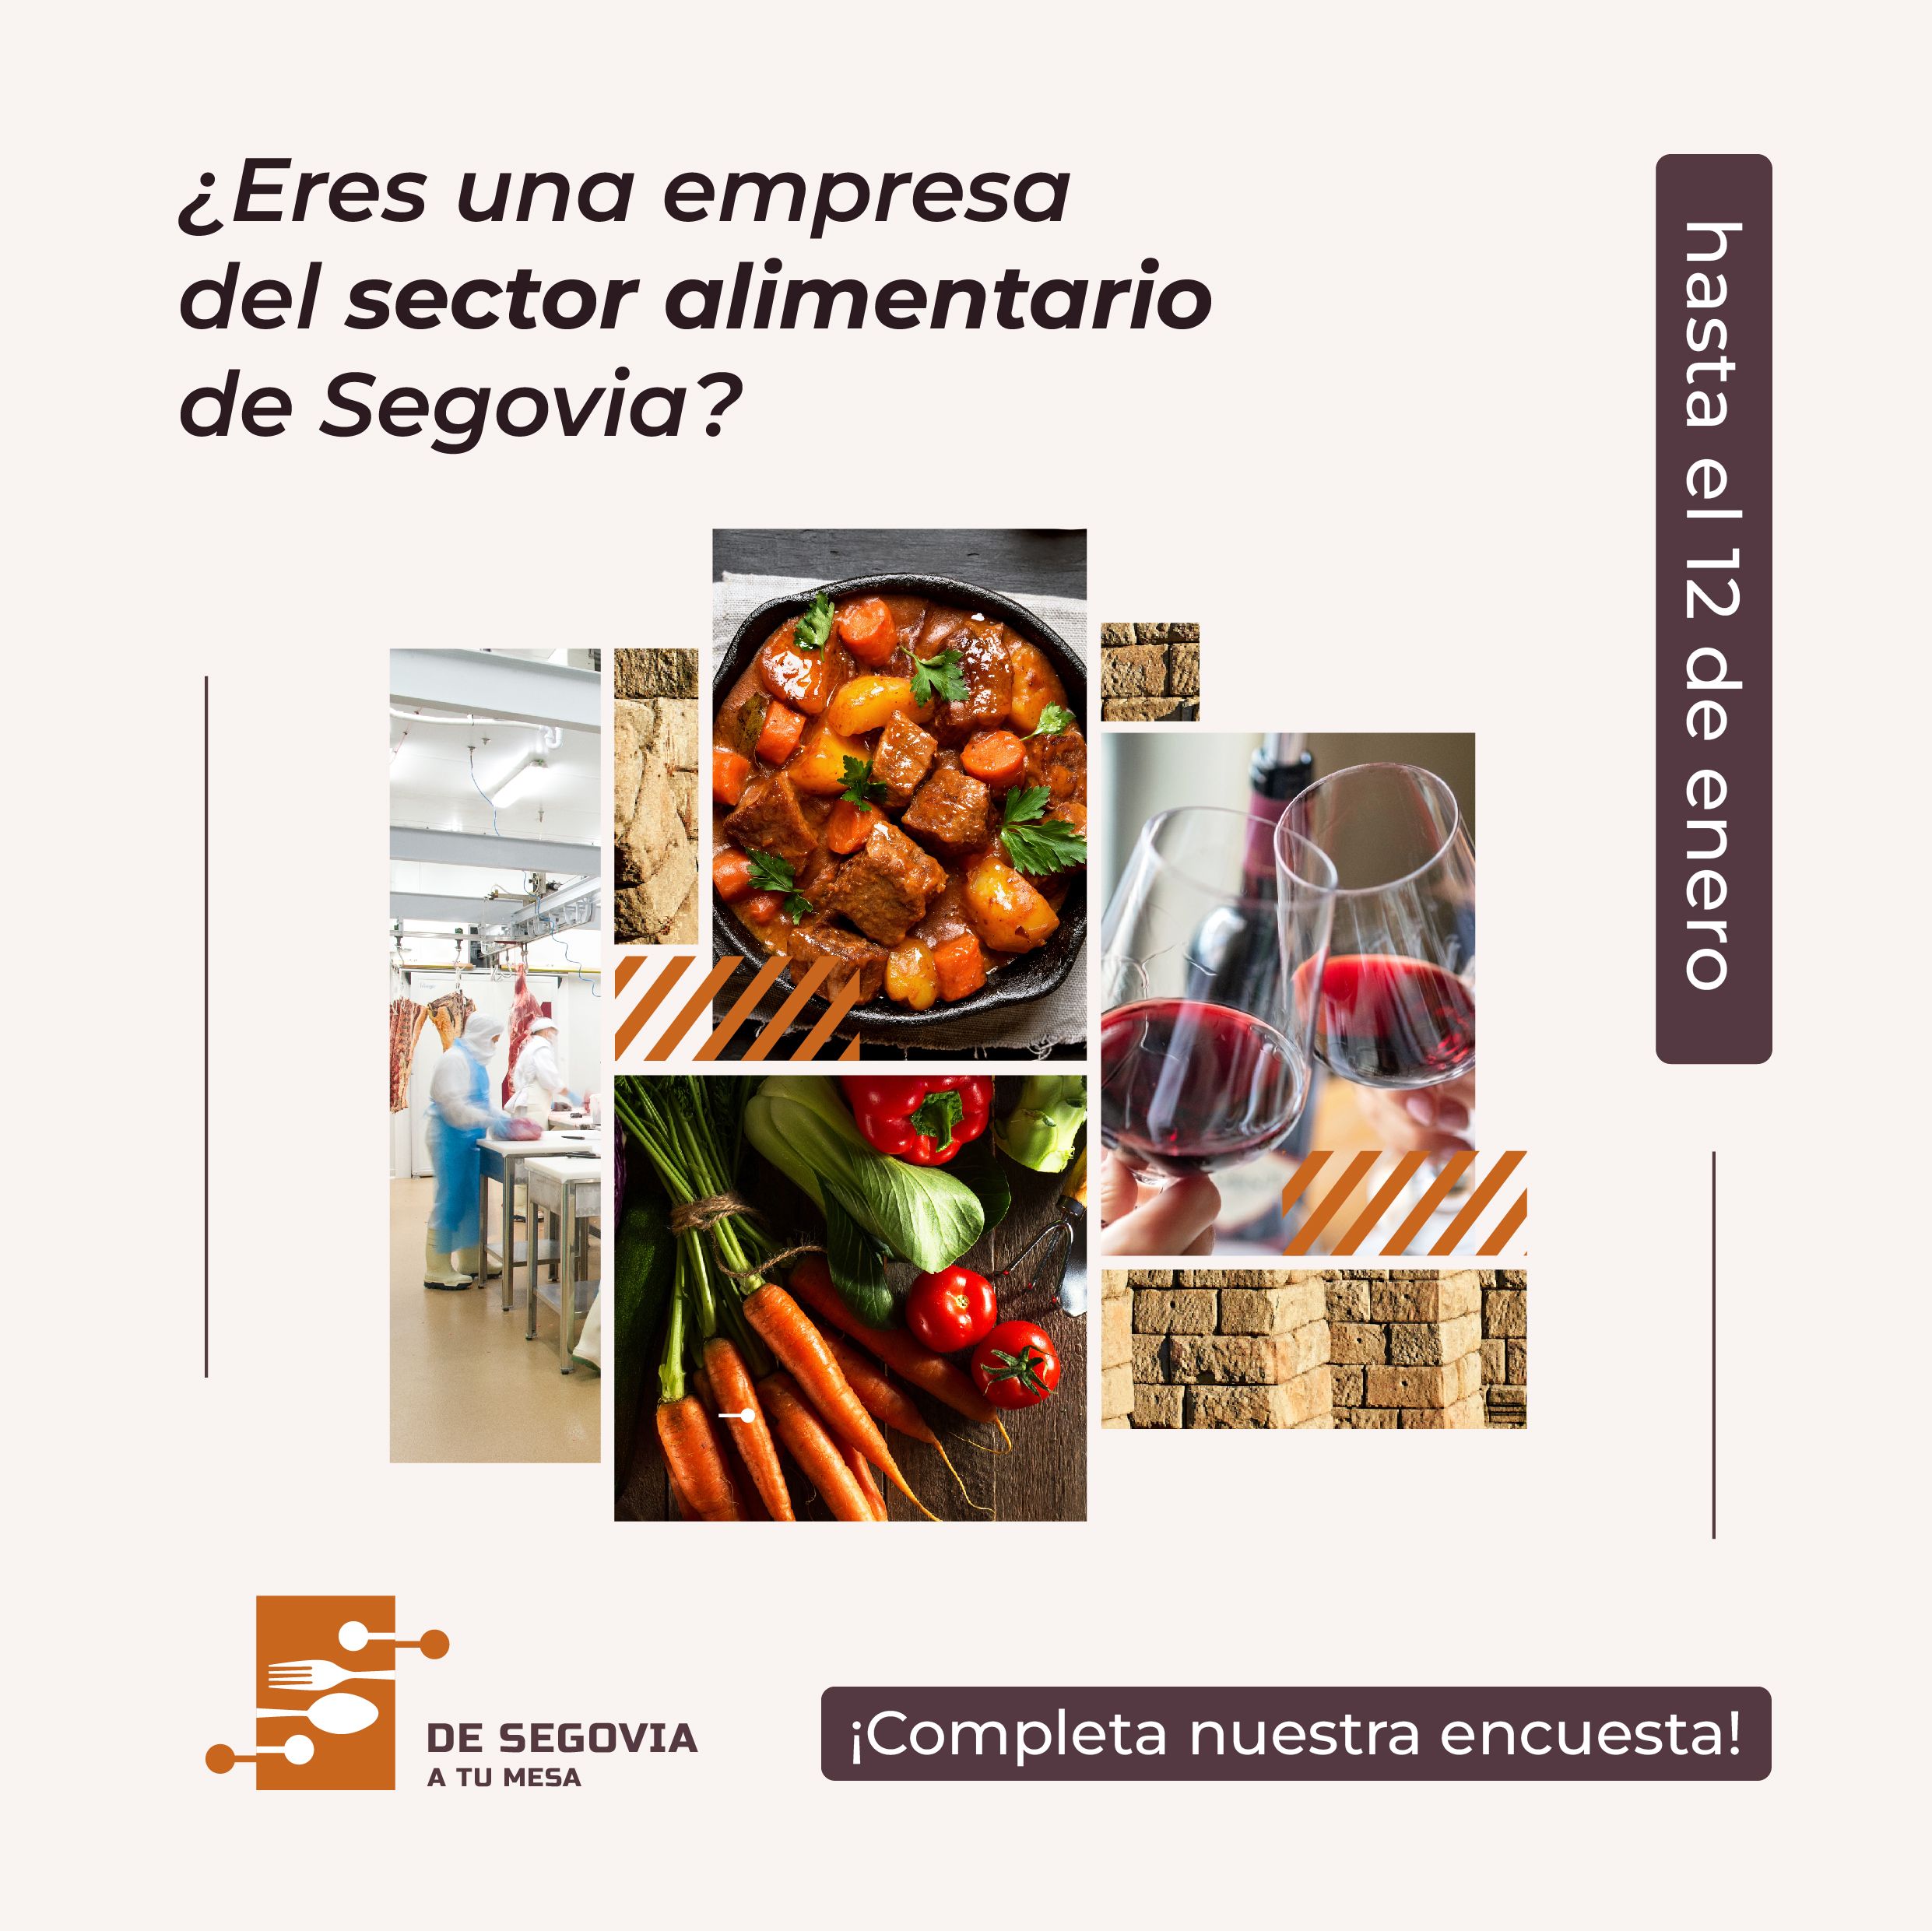 ‘De Segovia a tu mesa’ lanza una encuesta para conocer el estado del sector alimentario